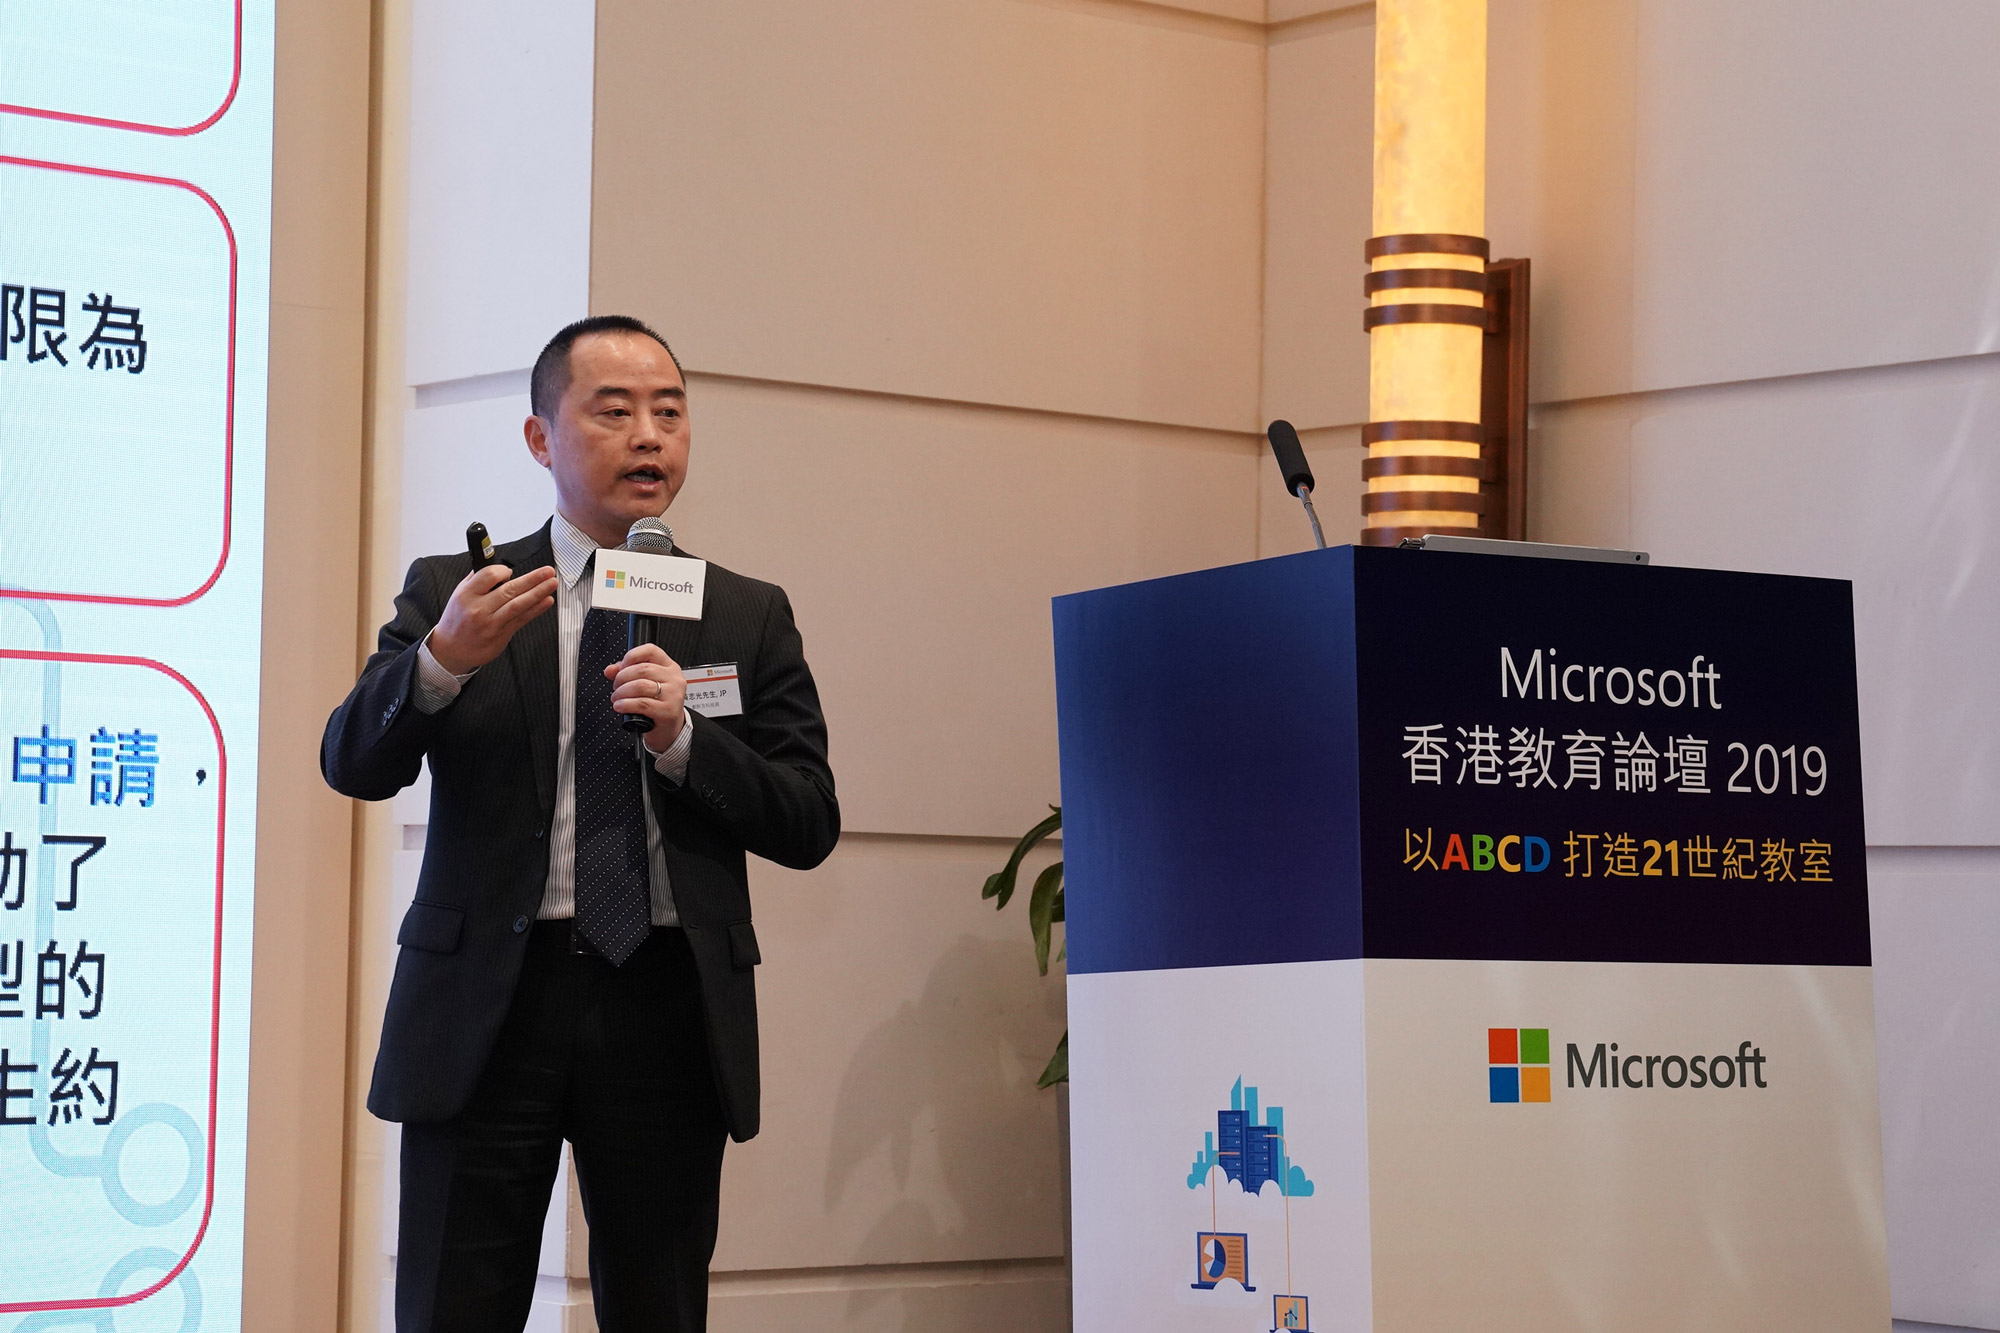 助理政府资讯科技总监（产业发展）黄志光先生于「Microsoft香港教育论坛2019」简介「中学IT创新实验室」计划